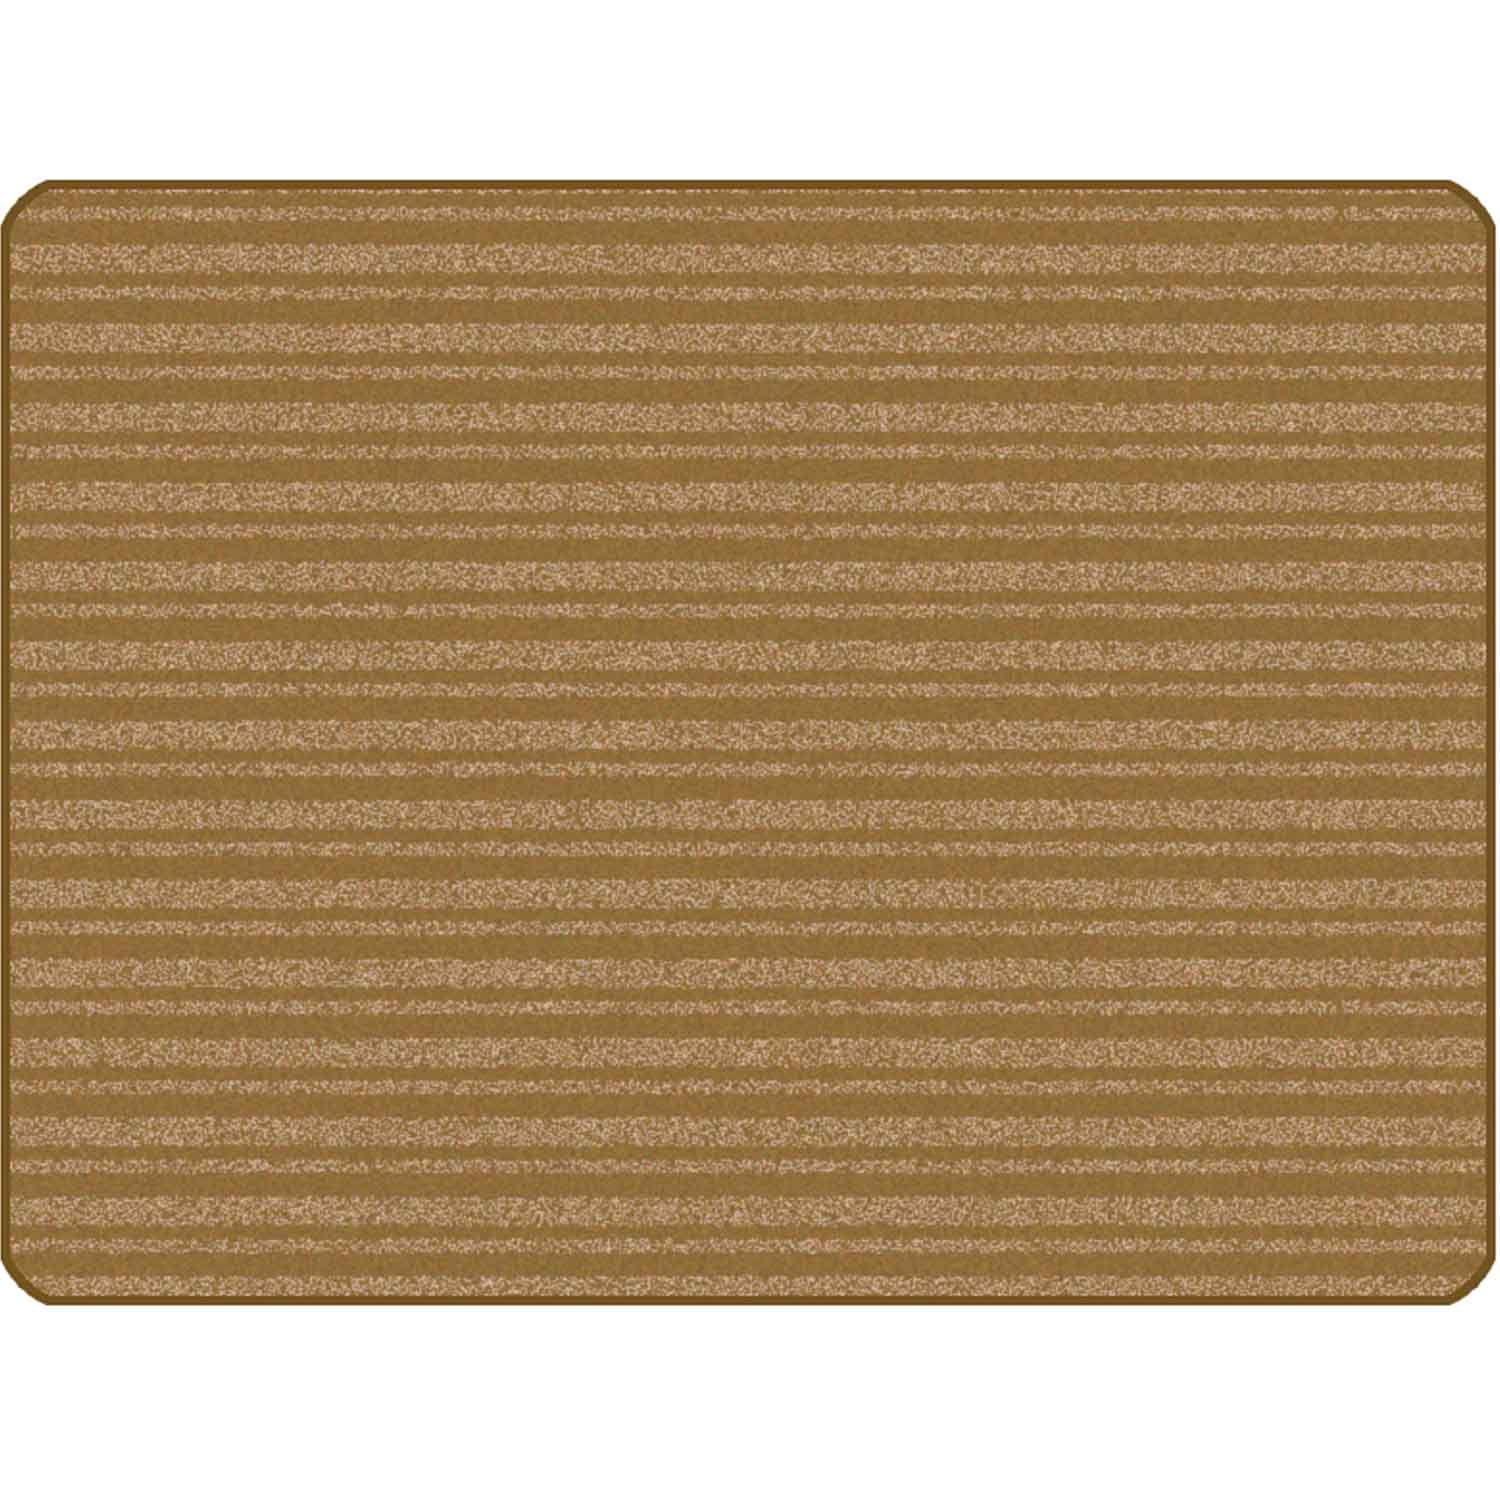 KIDSoft Subtle Stripes Rug Brown Tan 3' x 4'